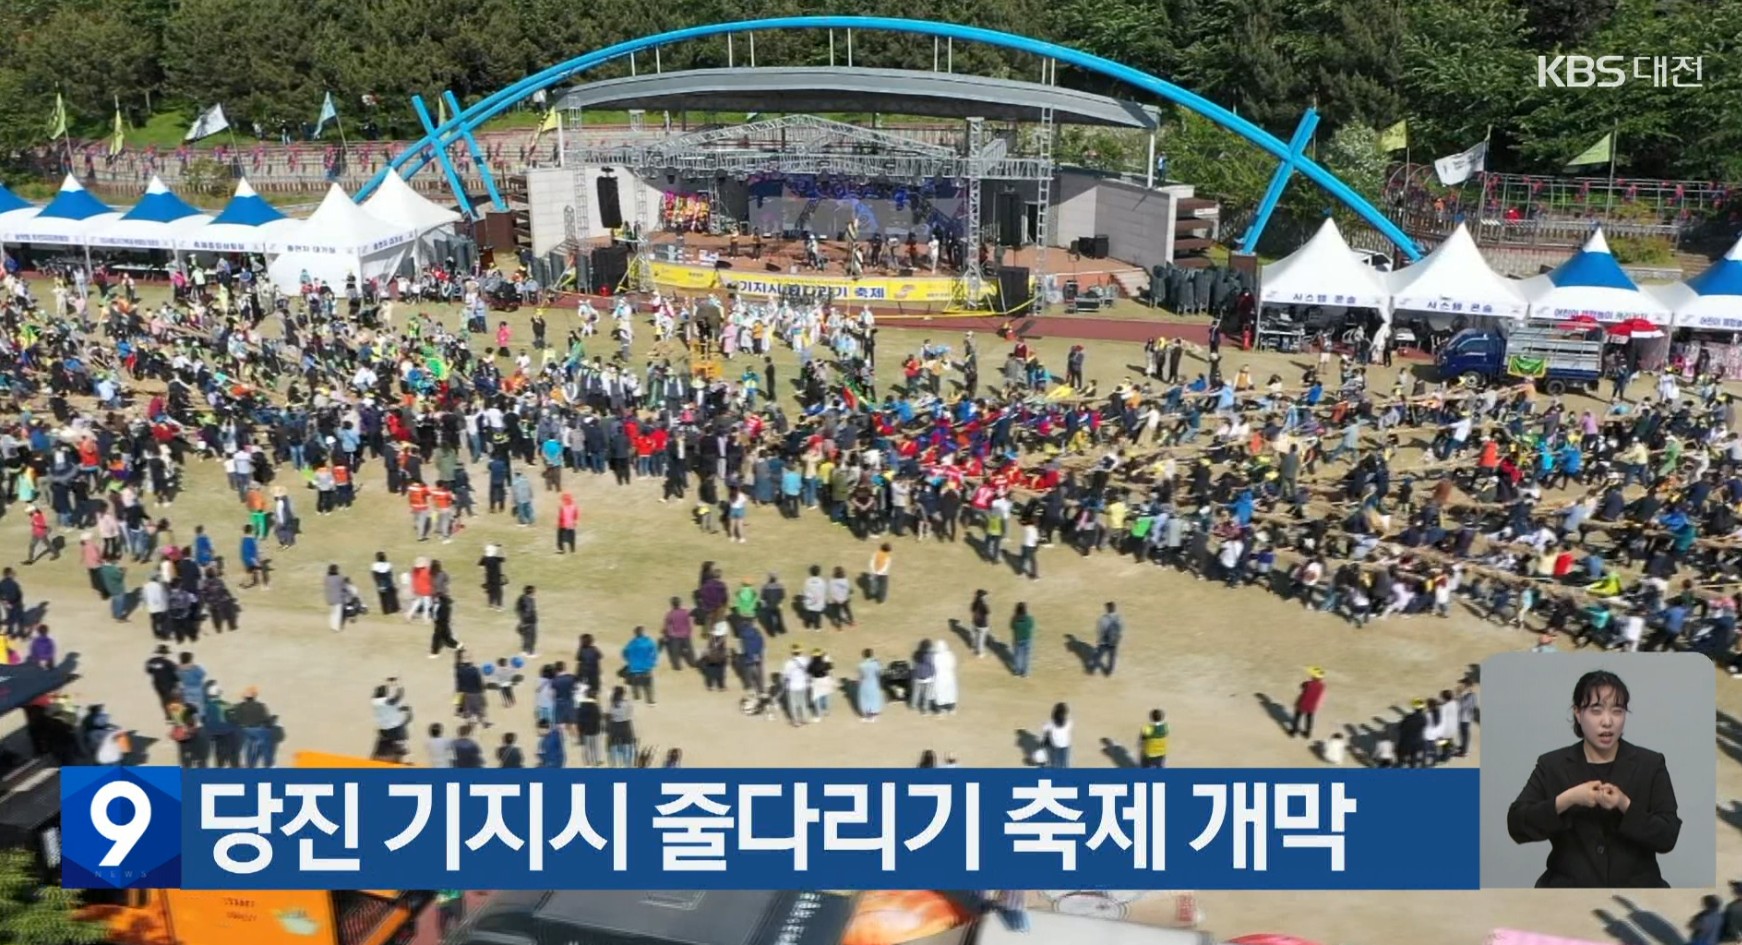 당진 기지시 줄다리기 축제 개막_KBS1대전_충남방송_4.19(수)